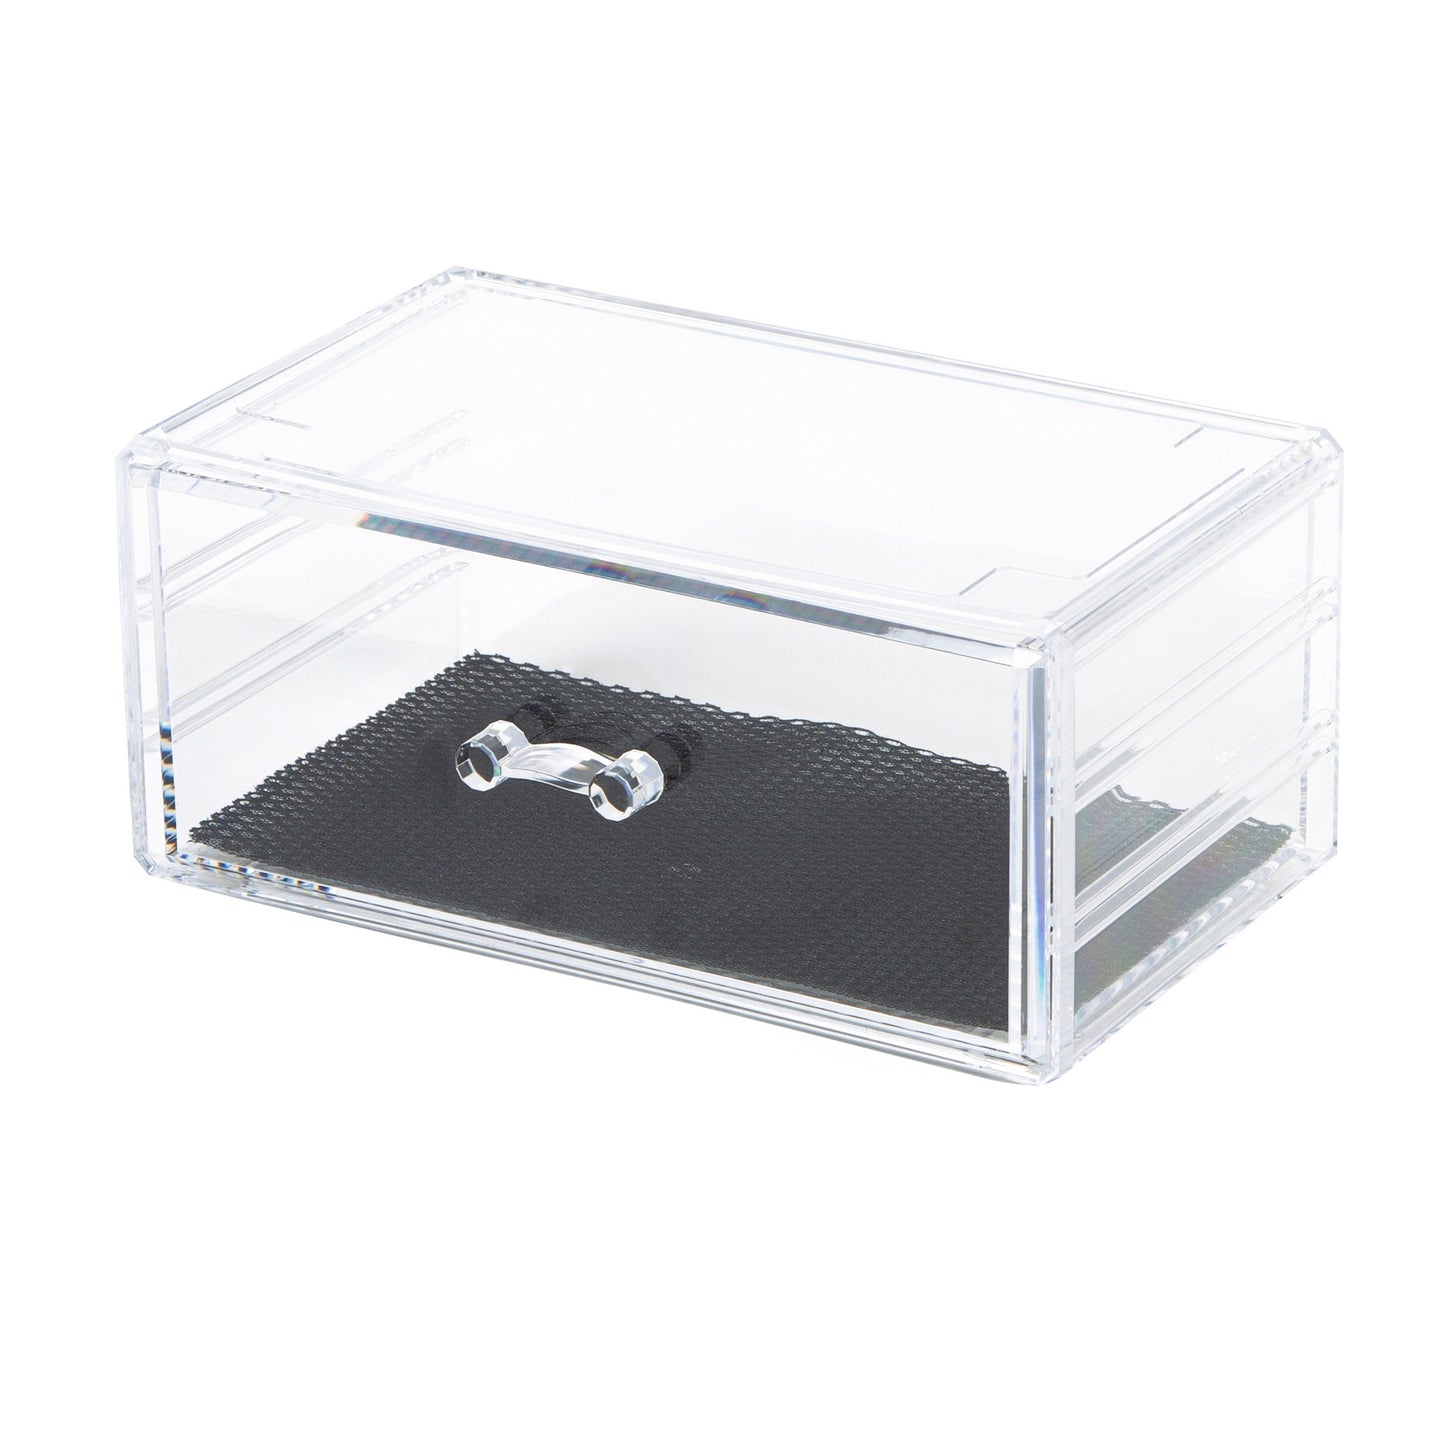 Caja de almacenamiento transparente para maquillaje y joyería con cajón